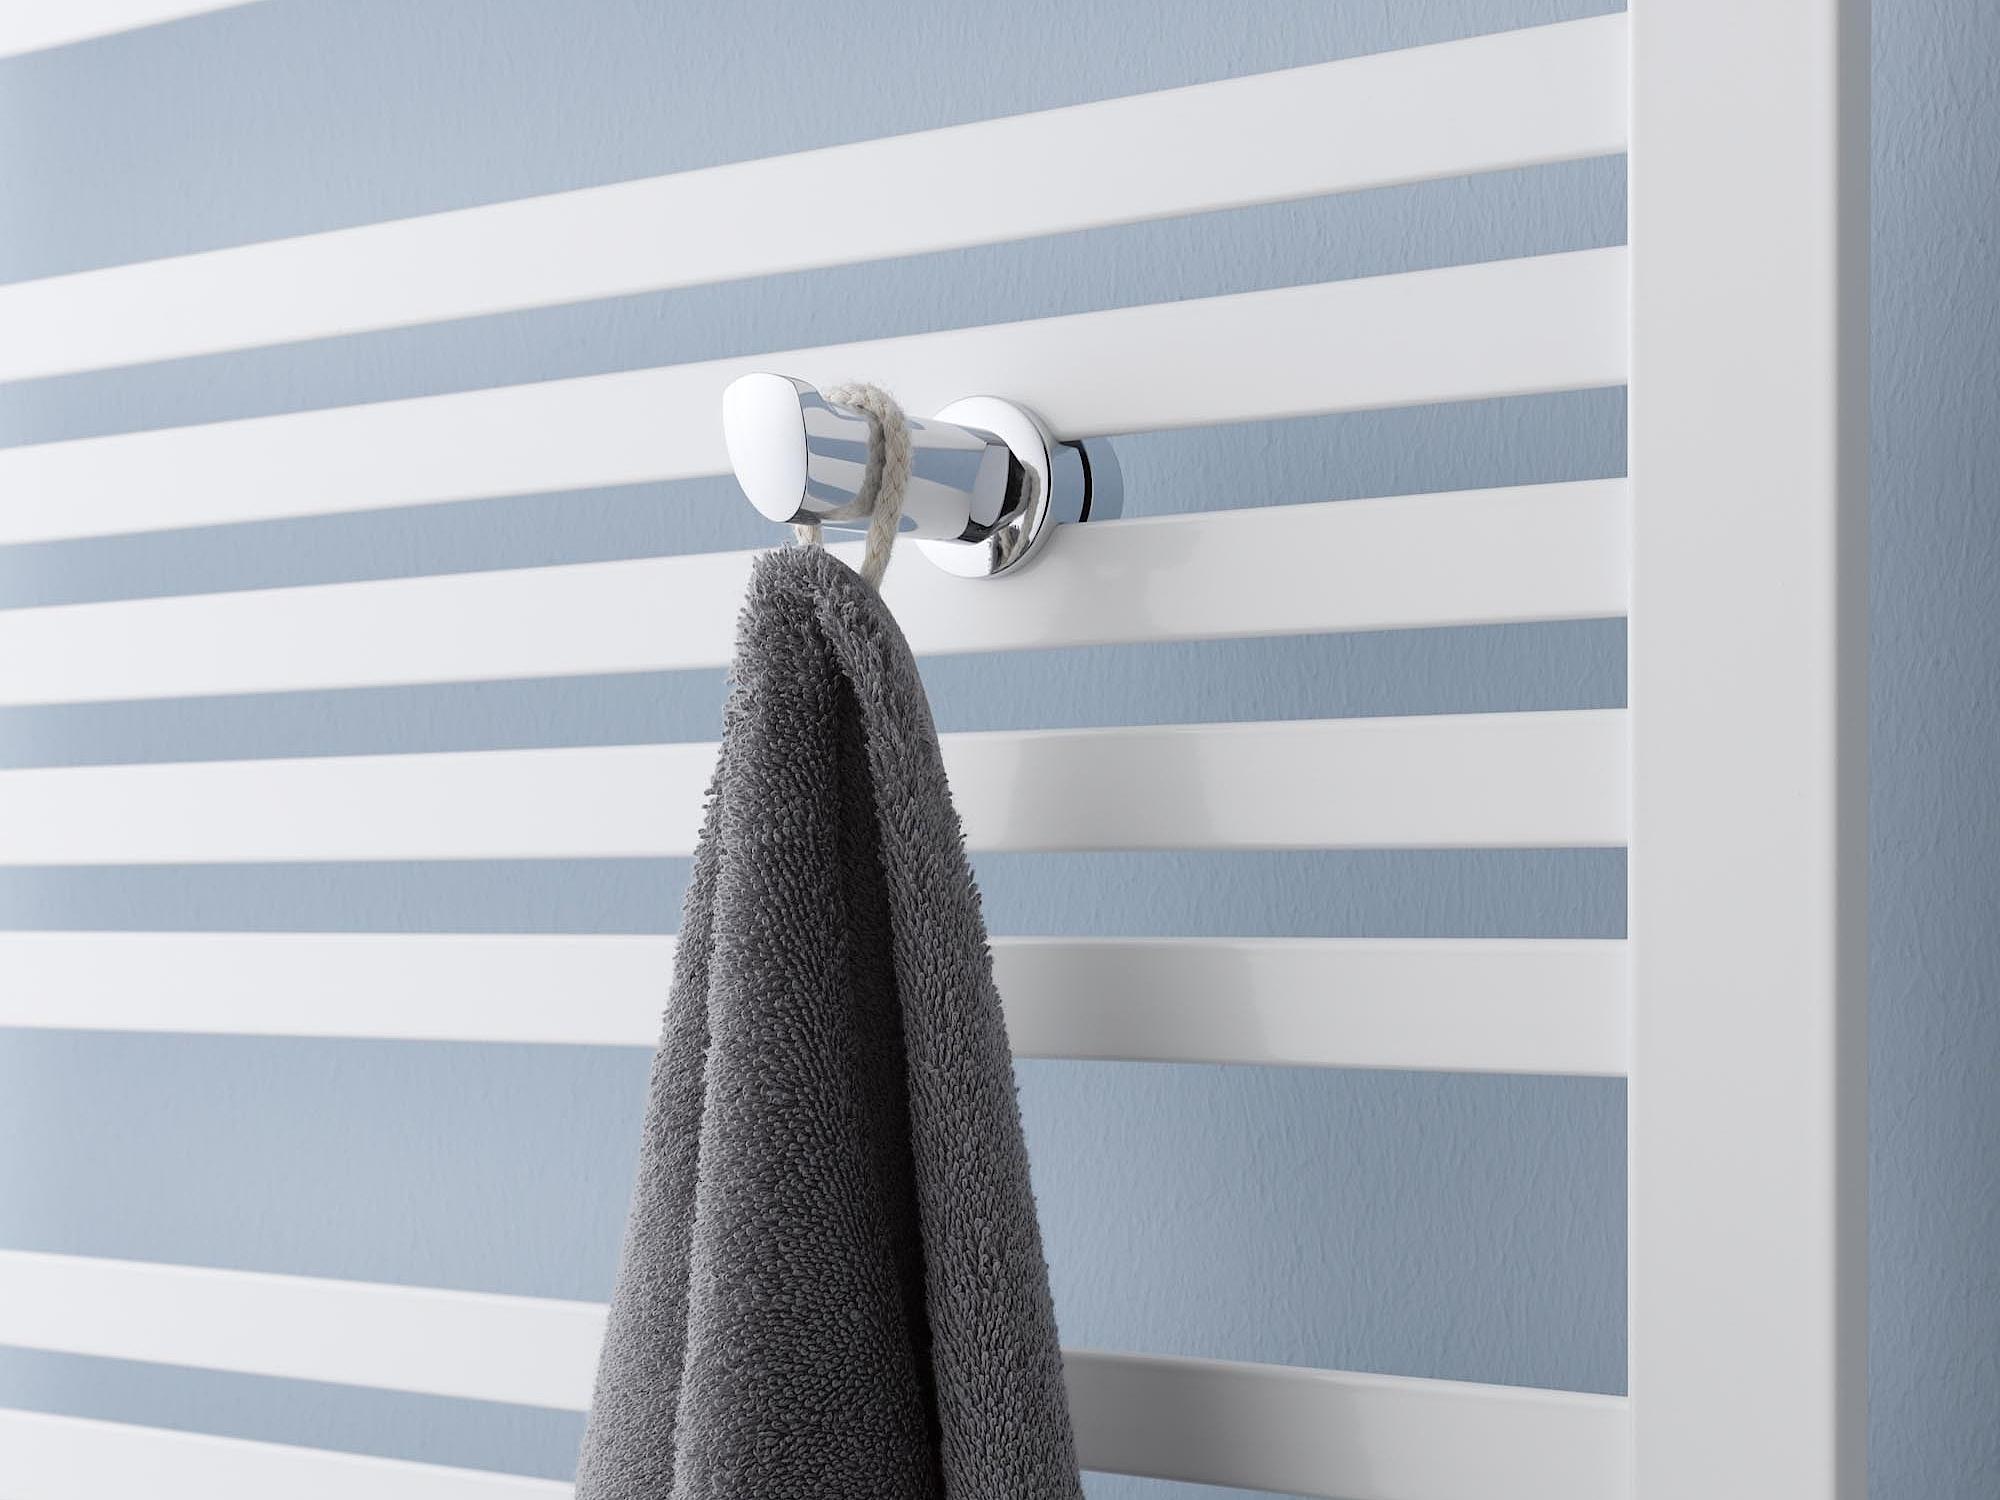 Radiateur design et de salle de bain Geneo quadris de Kermi patère porte-serviette.